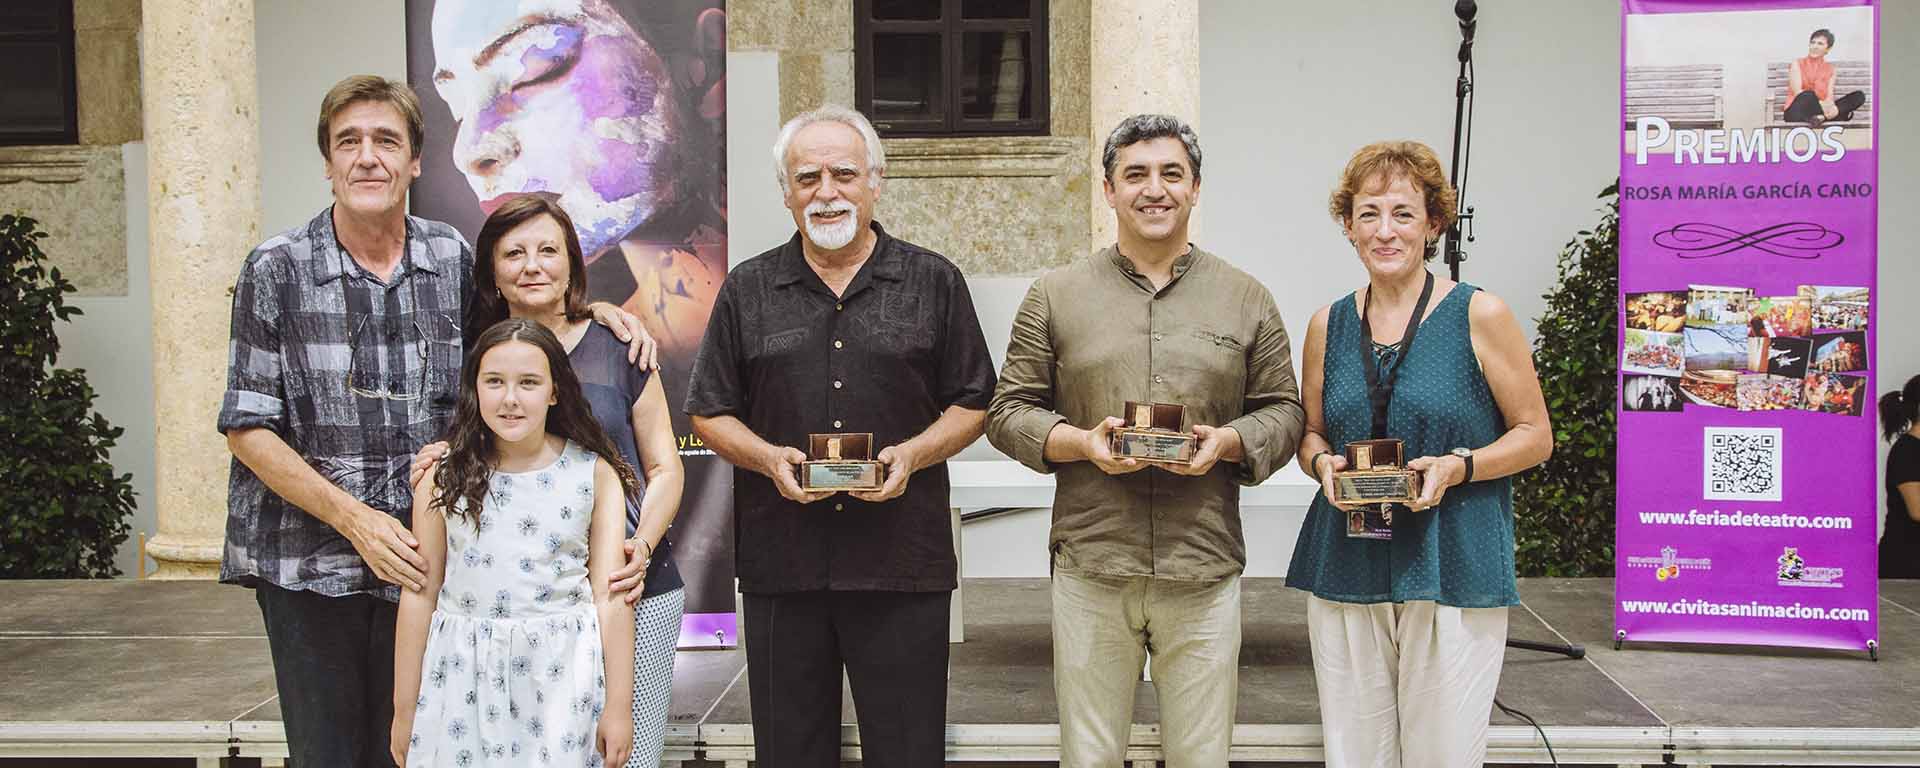 Premios Rosa María Cano